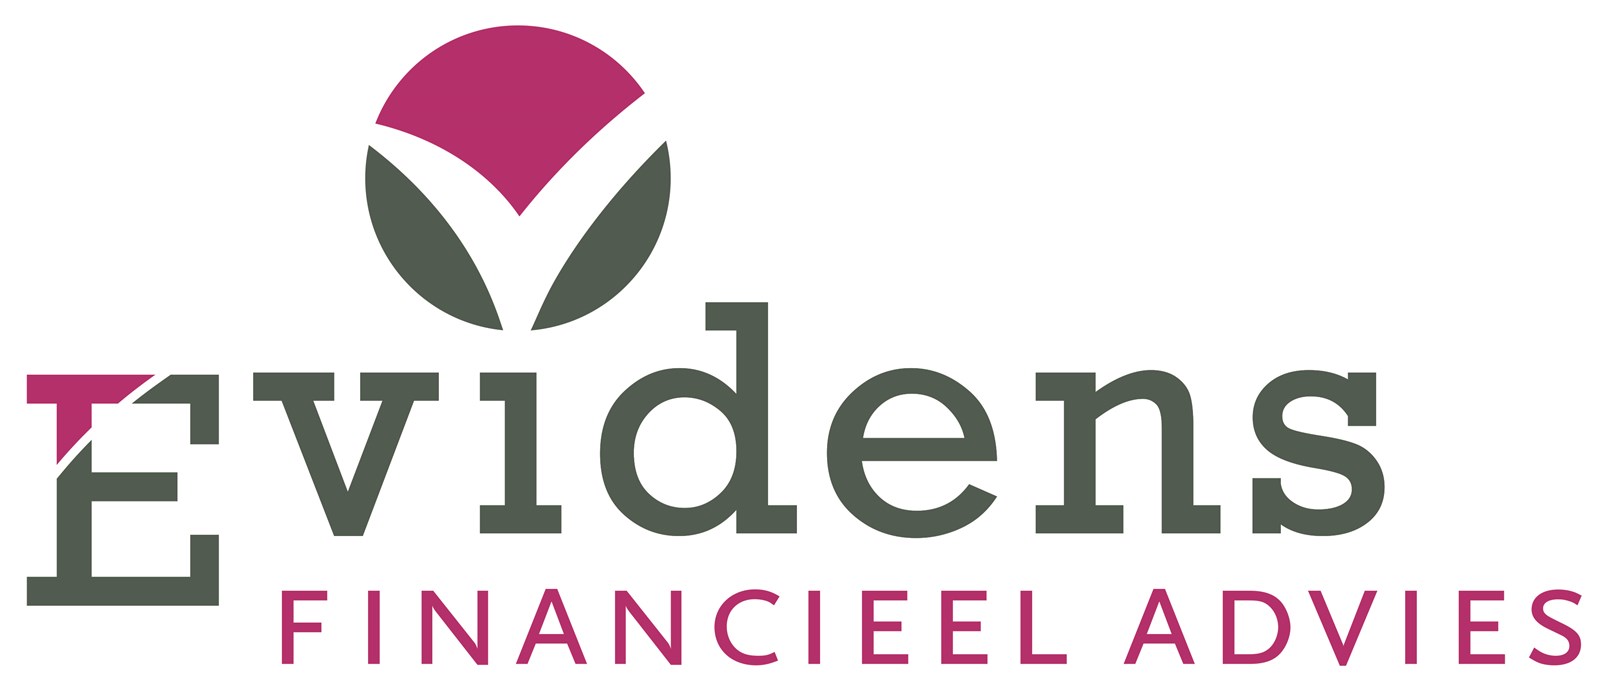 Logo van Evidens Financieel Advies